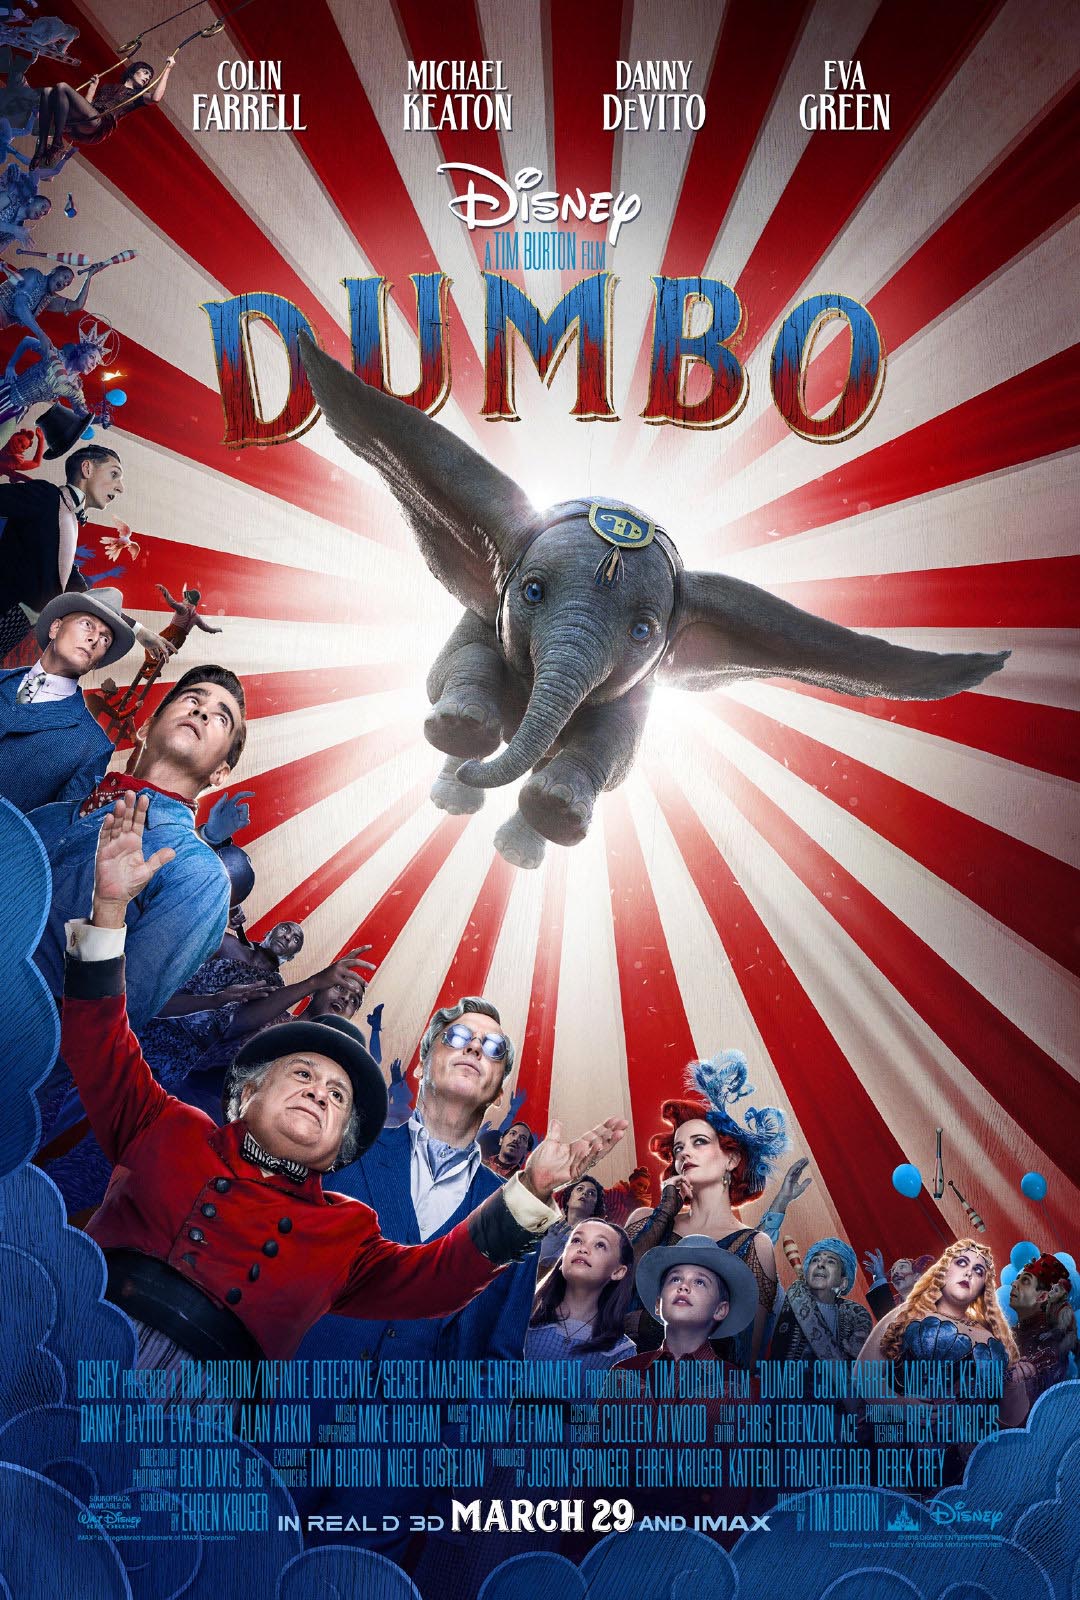 DUMBO (2019) Full Movie Free Online